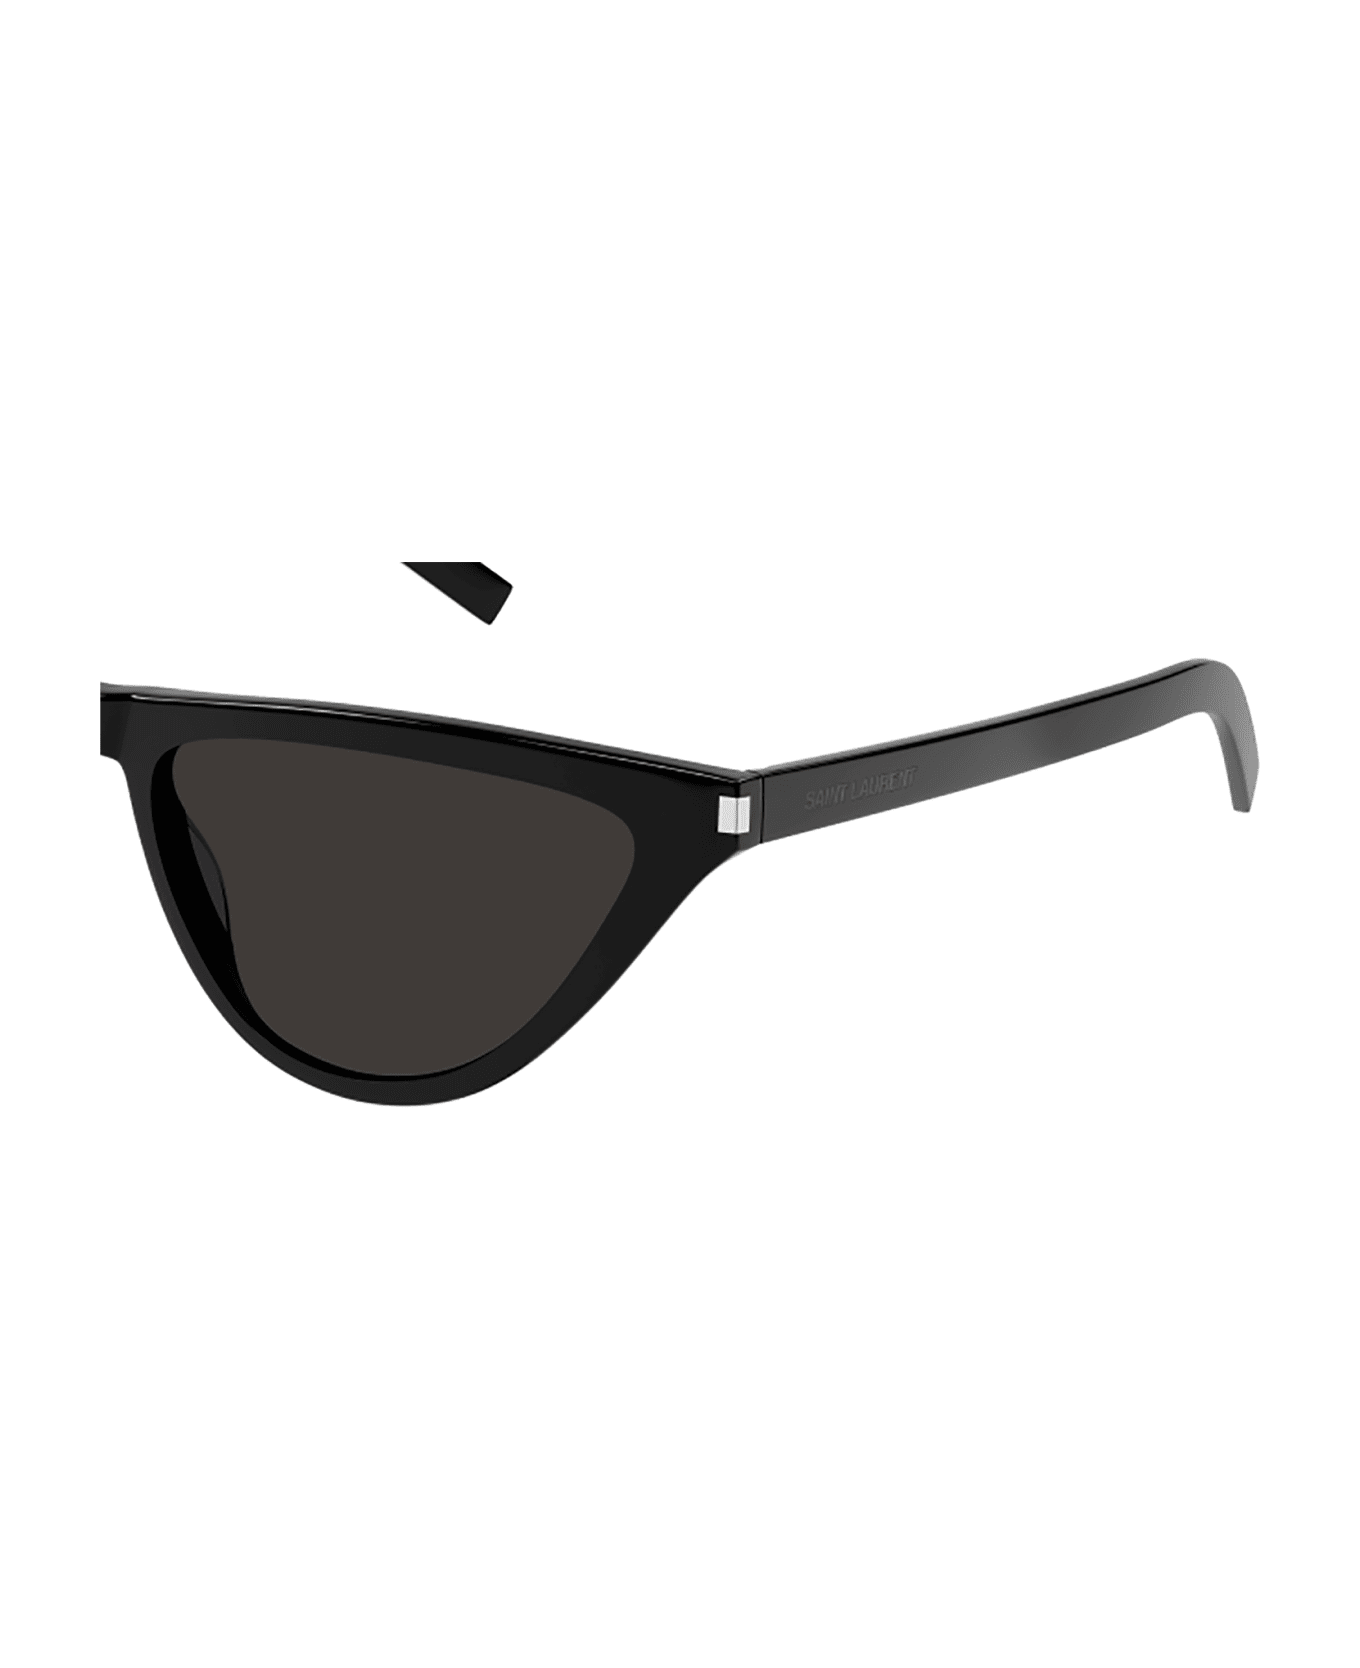 Saint Laurent Eyewear SL 550 SLIM Sunglasses - Black Black Black サングラス